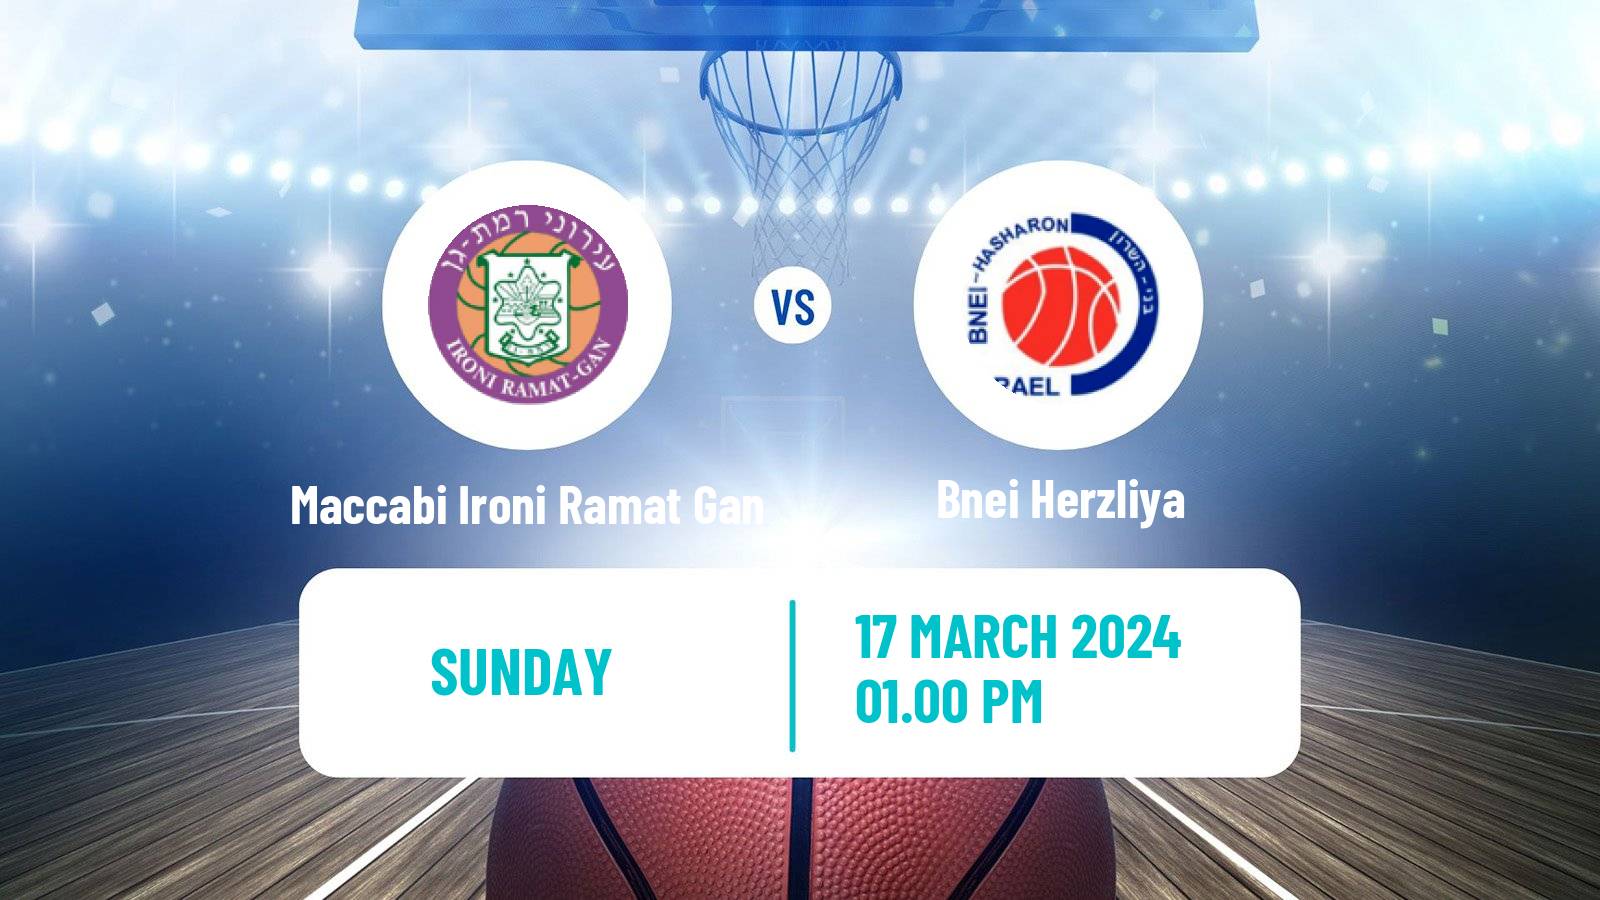 Basketball Israeli Basketball Super League Maccabi Ironi Ramat Gan - Bnei Herzliya